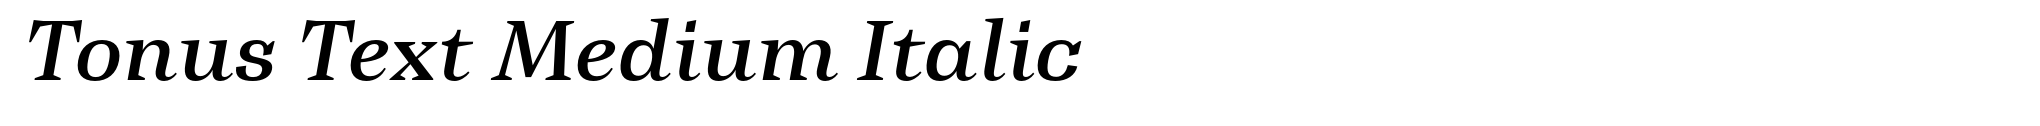 Tonus Text Medium Italic image